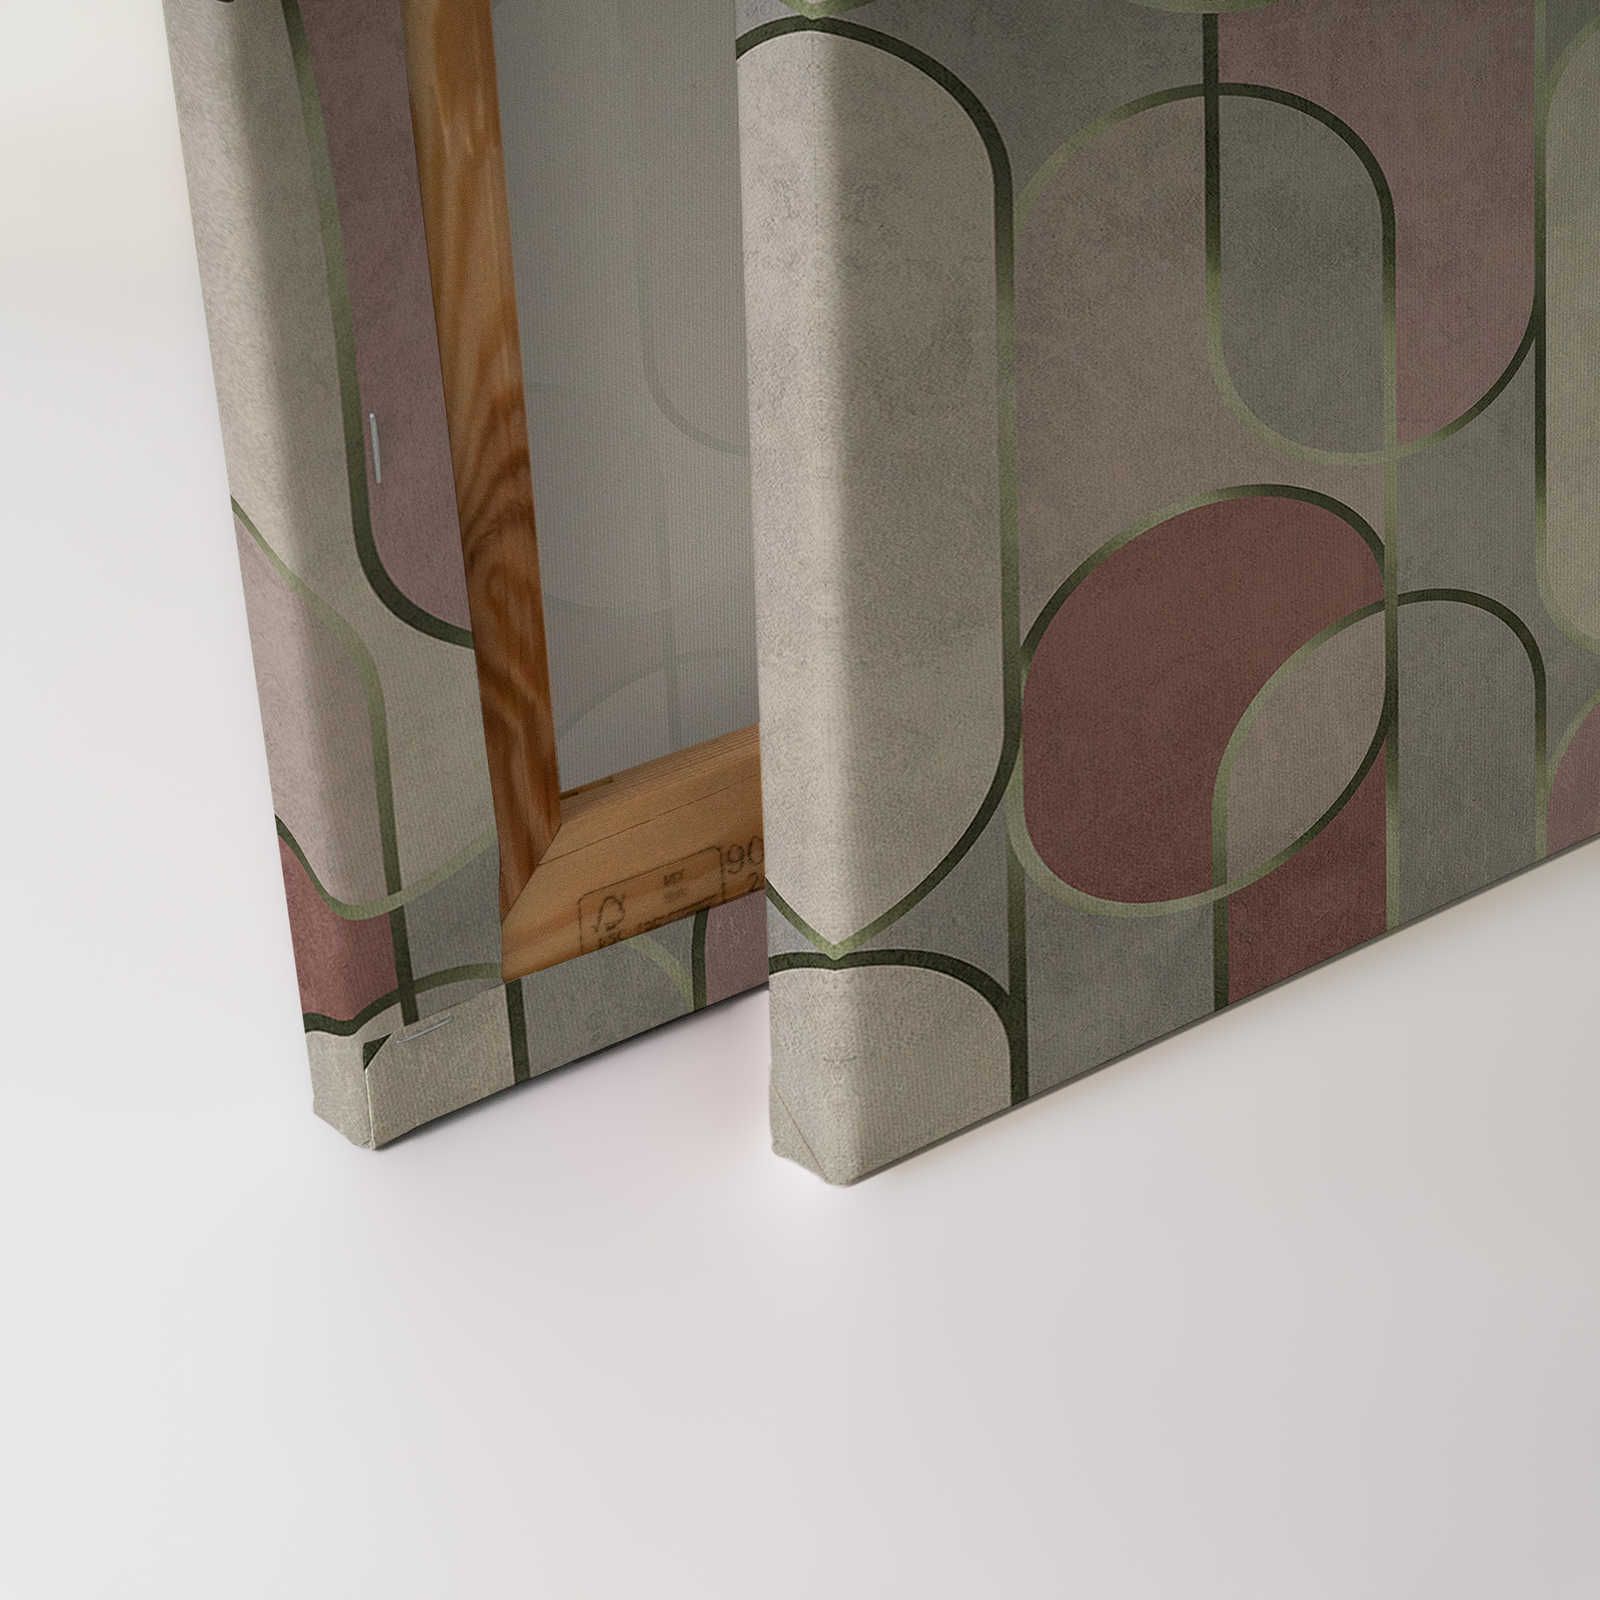             Ritz 1 - Quadro su tela in stile retrò, grigio e viola con dettagli in oro - 0,90 m x 0,60 m
        